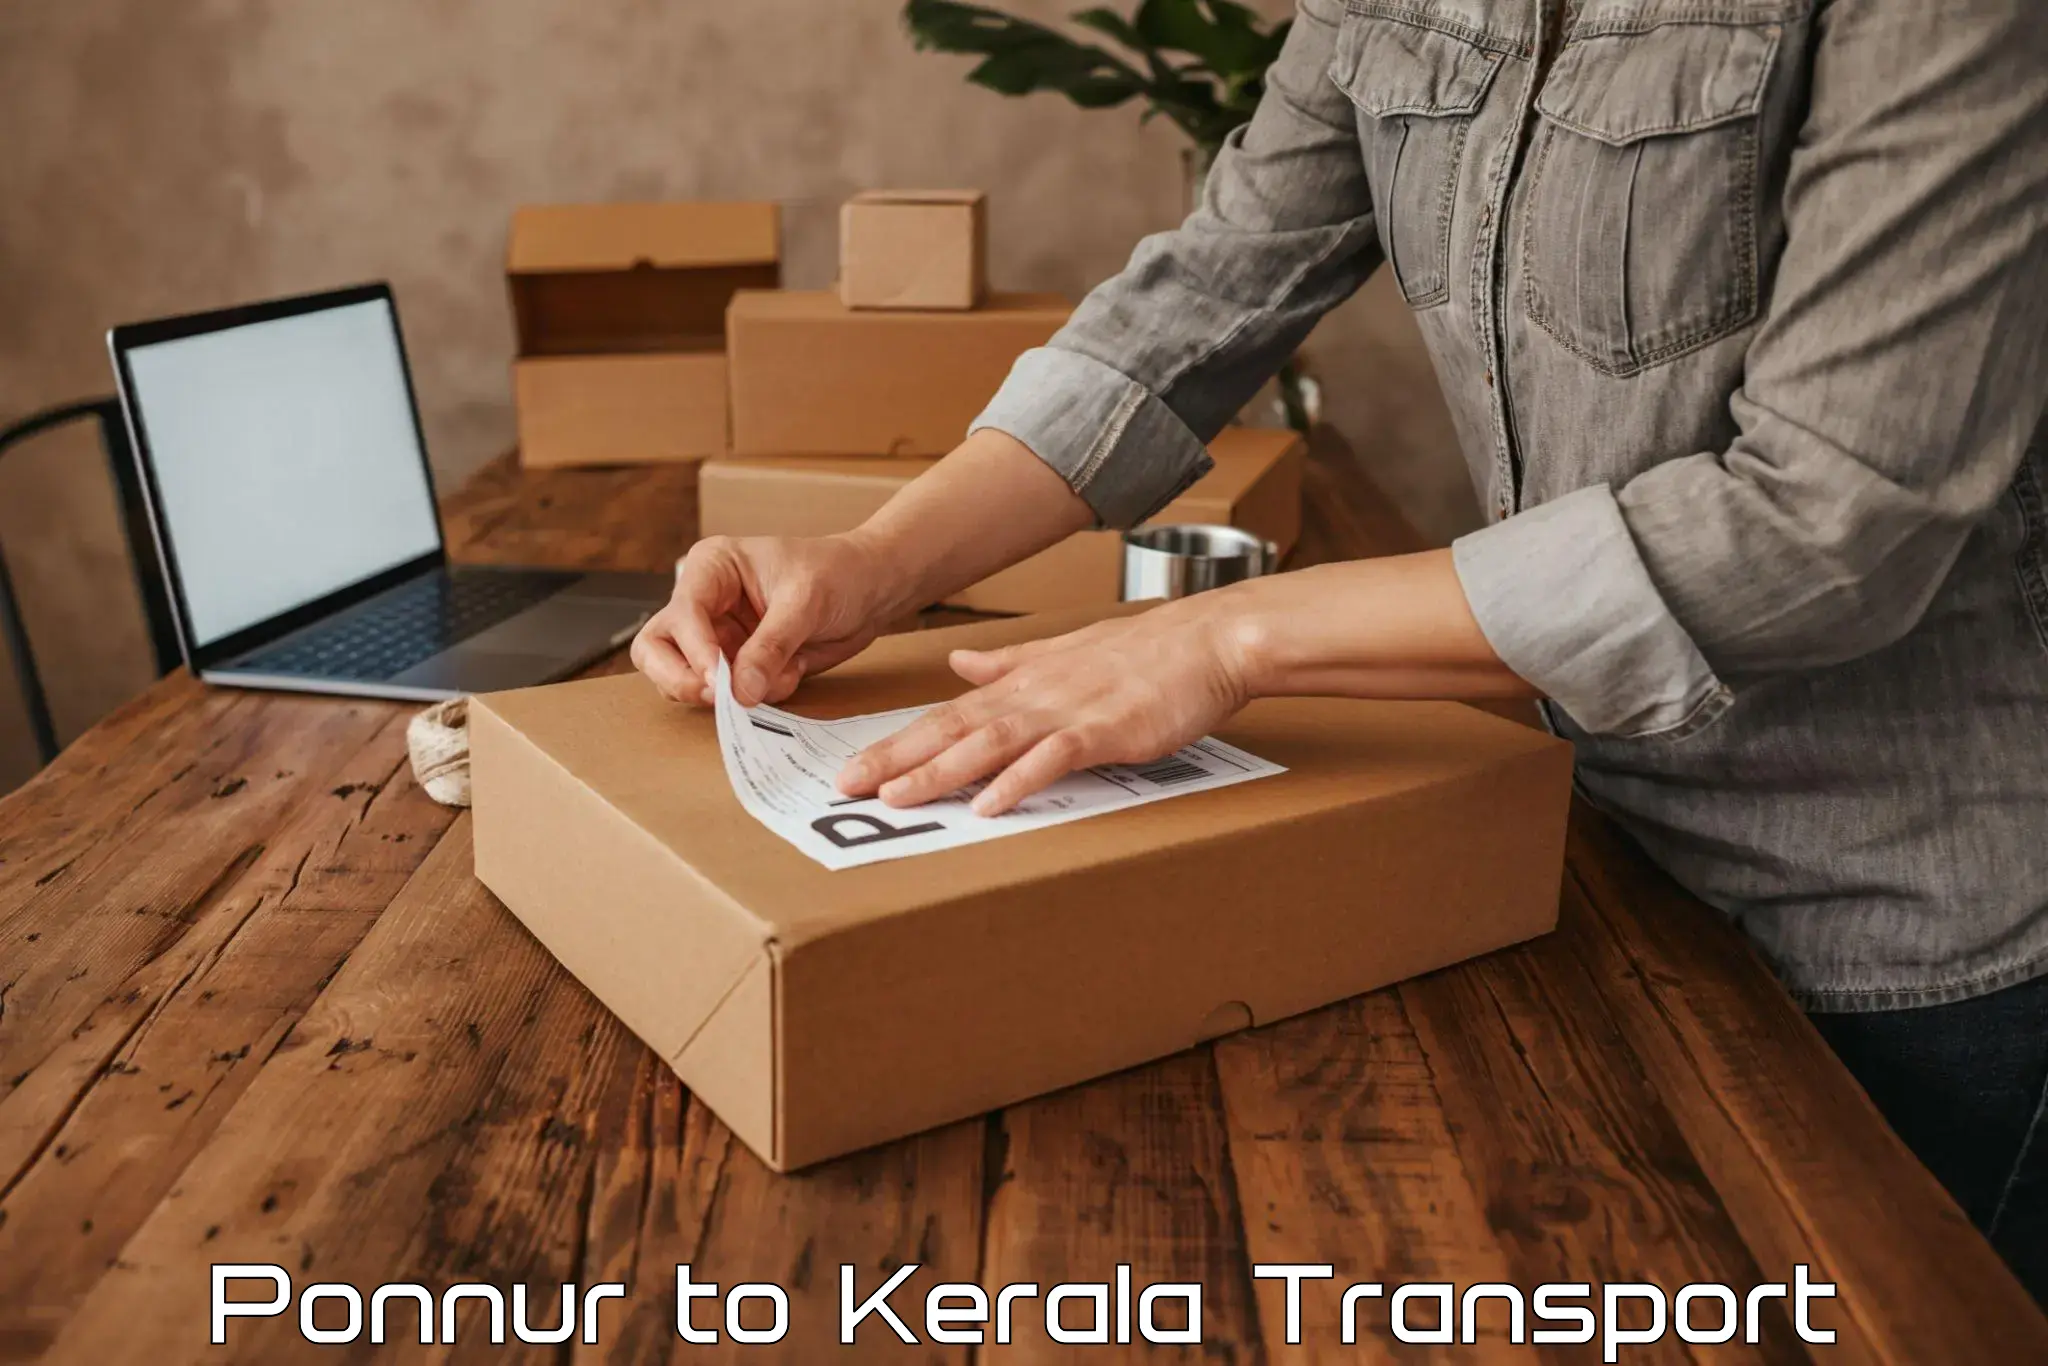 Online transport service in Ponnur to Thamarassery